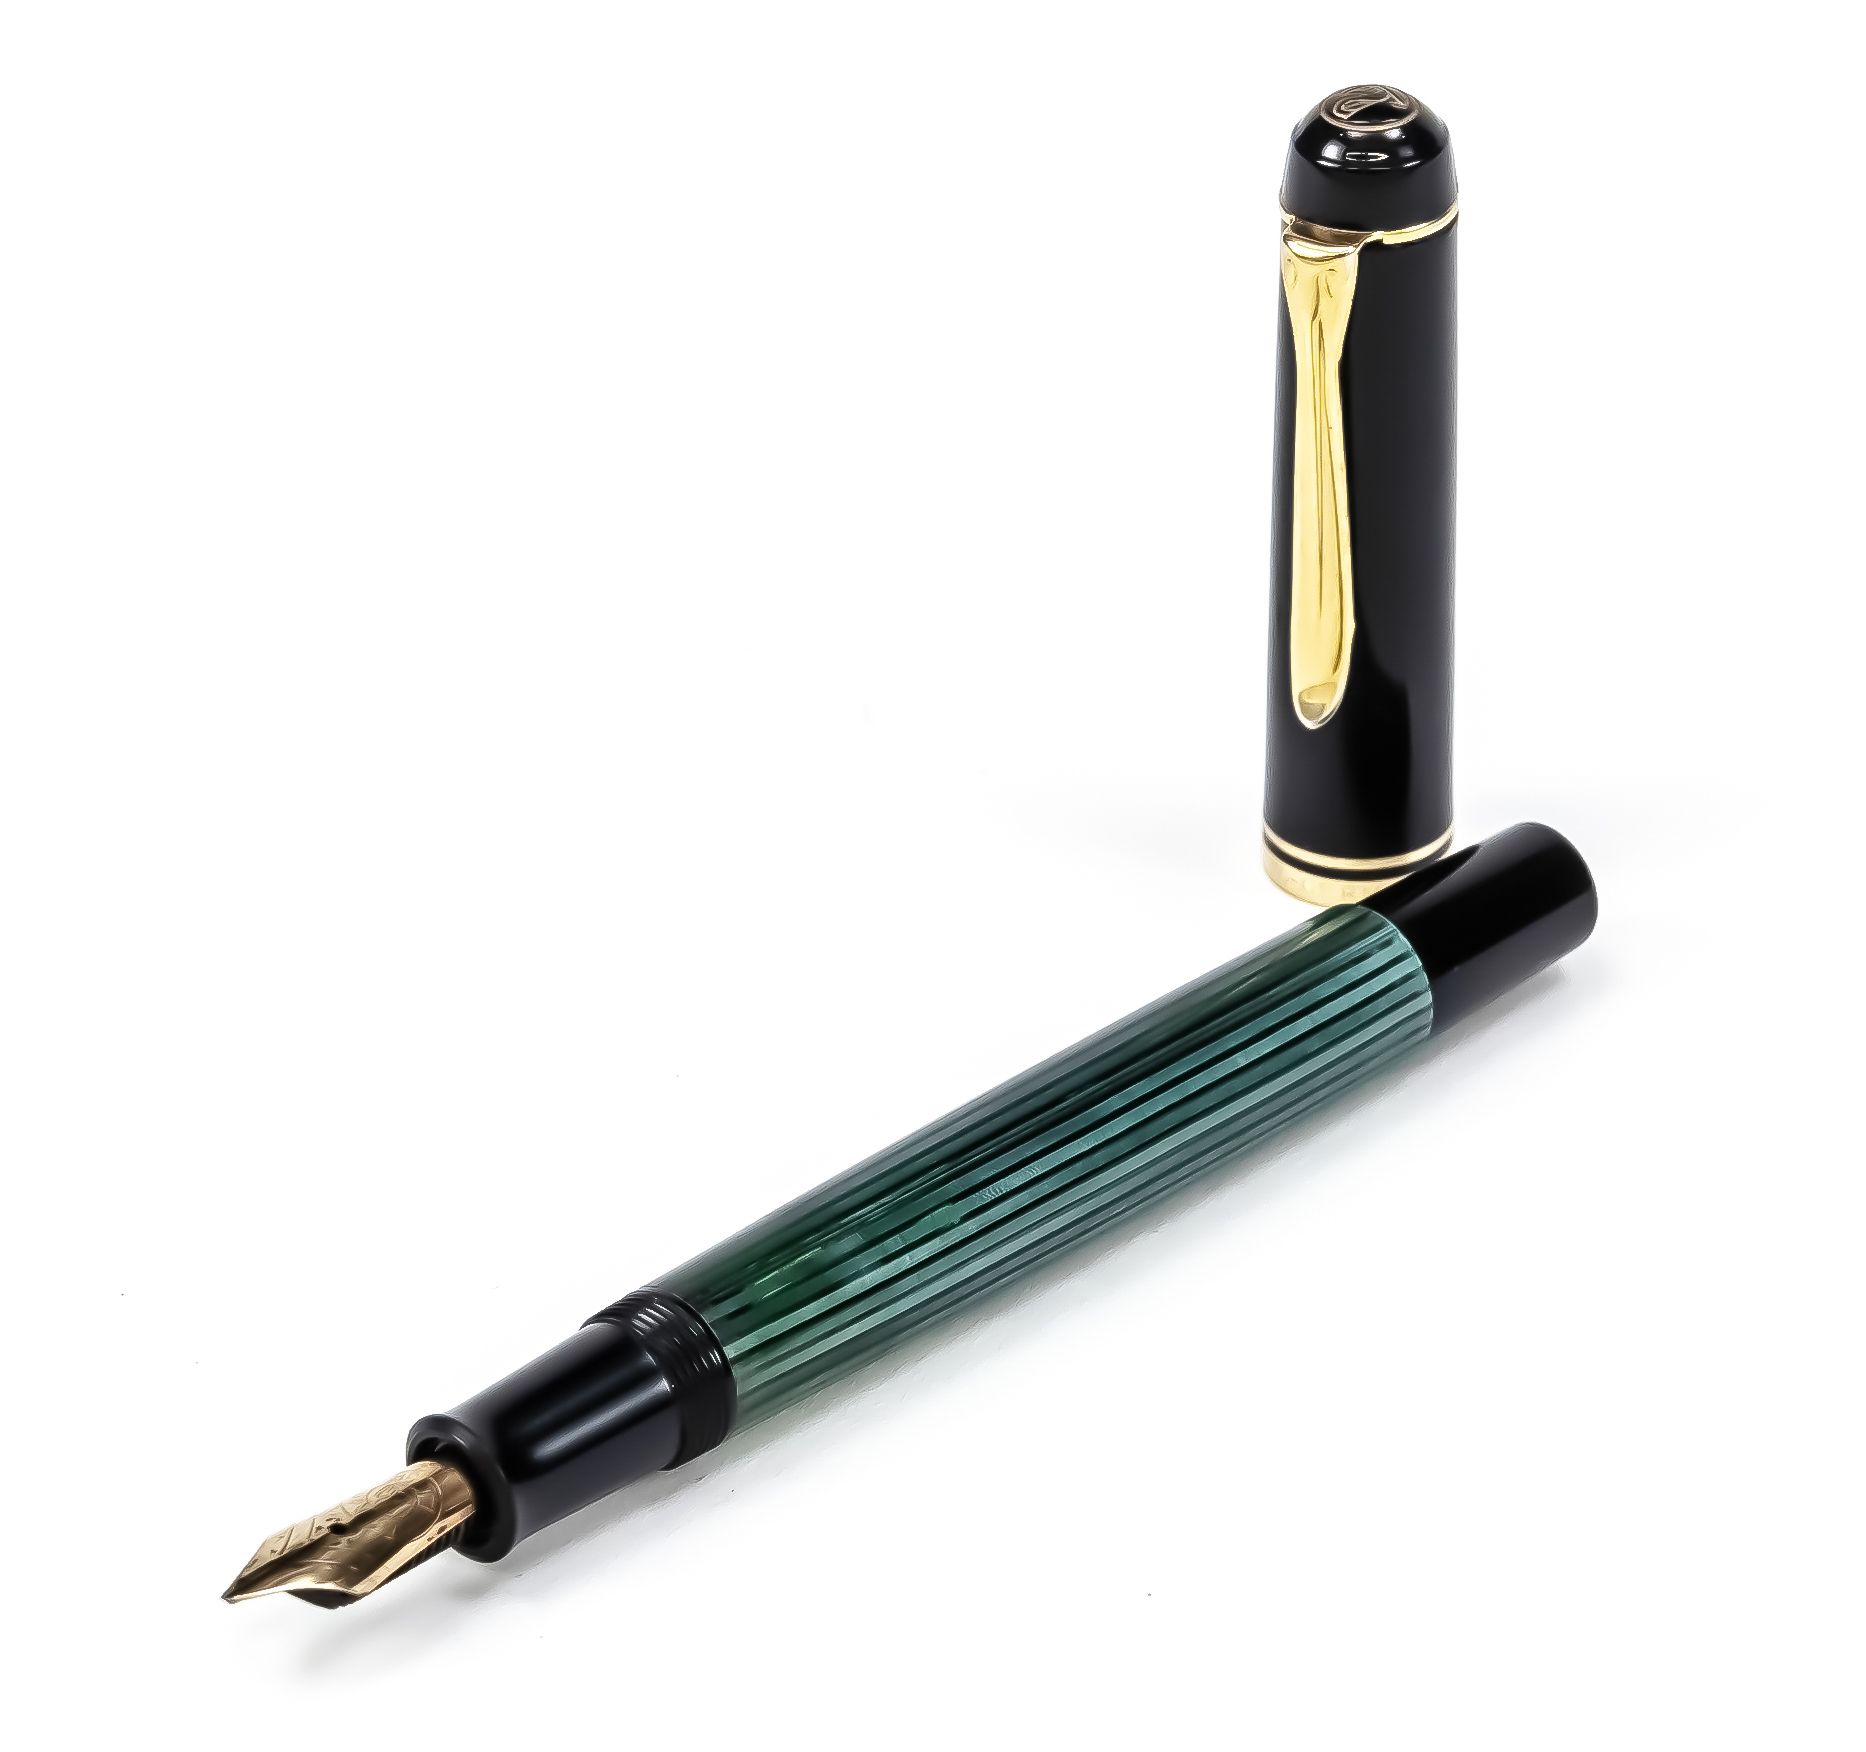 Null Pelikan，活塞式钢笔，20世纪下半叶，14C(585)黄金笔尖，黑色和绿色条纹的外壳，黑色笔帽，镀金应用，长12.5厘米